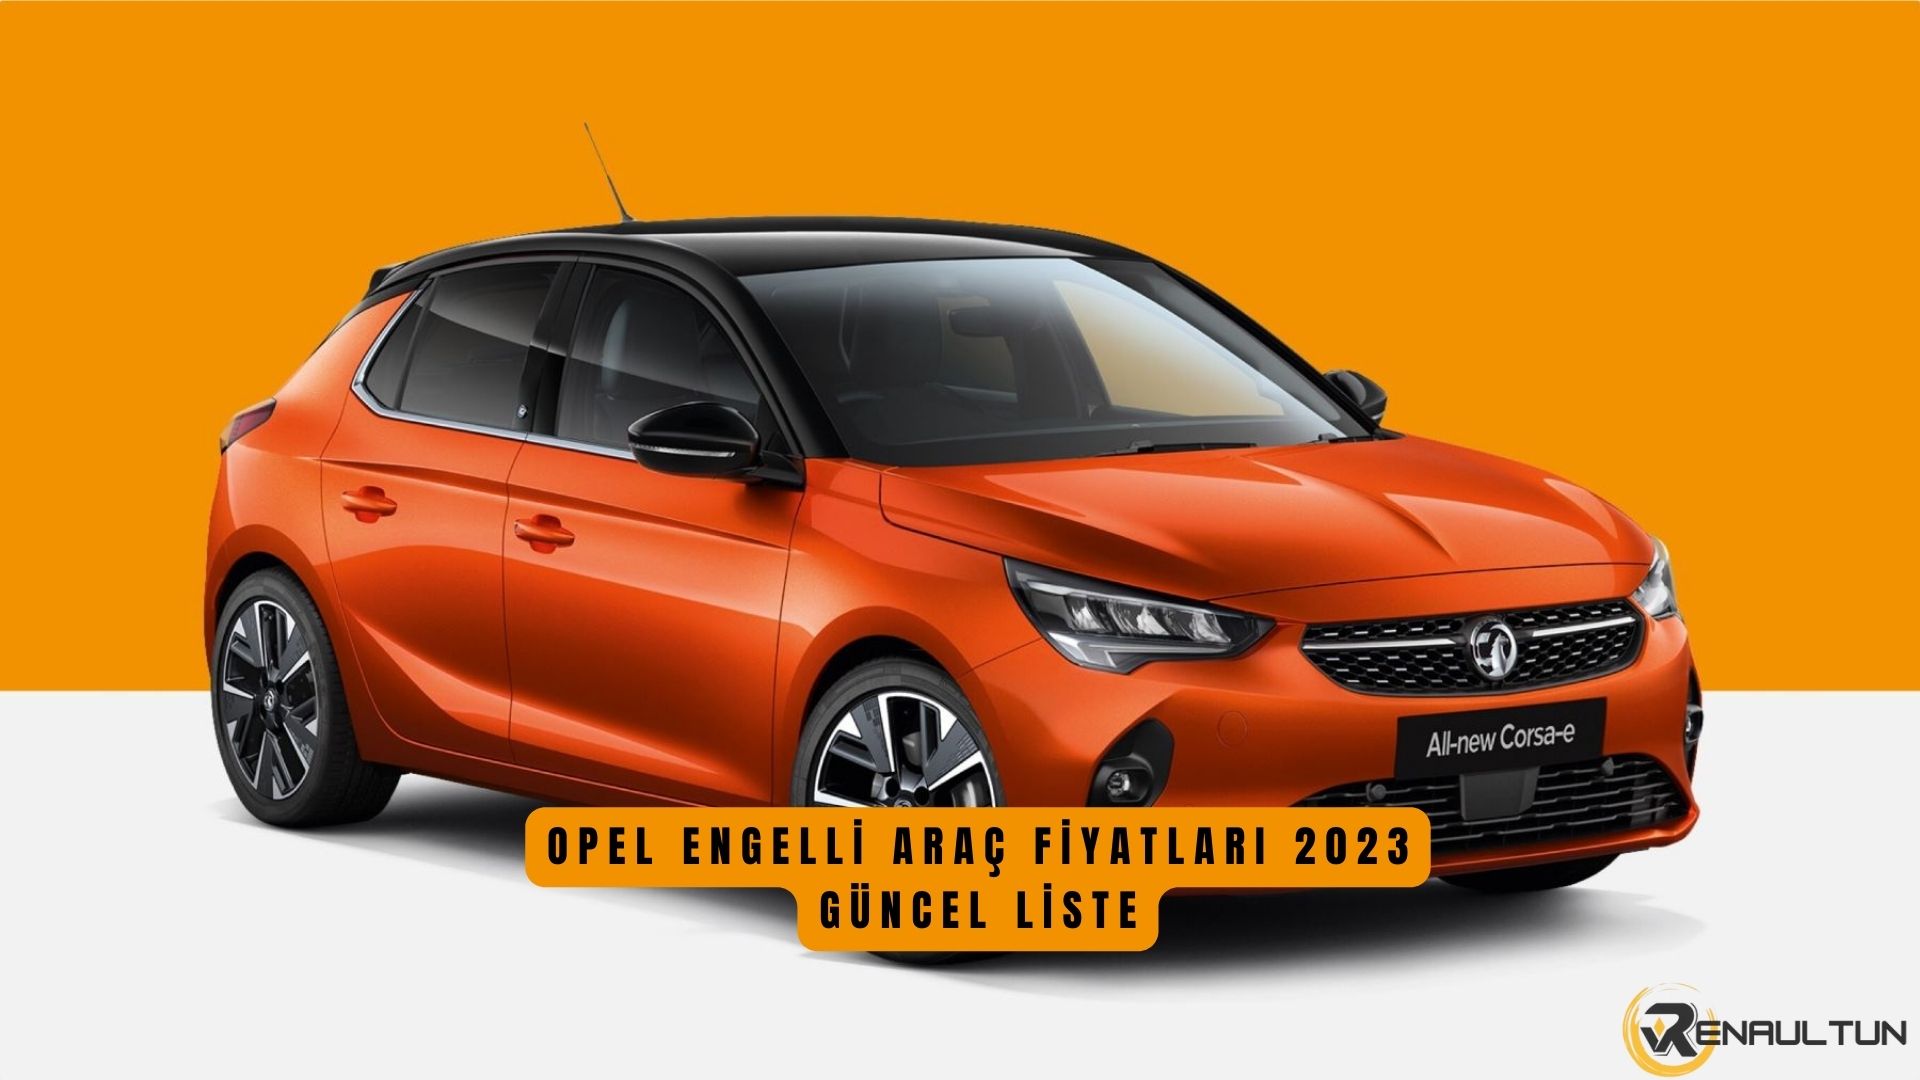 Opel Engelli Araç Fiyat Listesi 2023